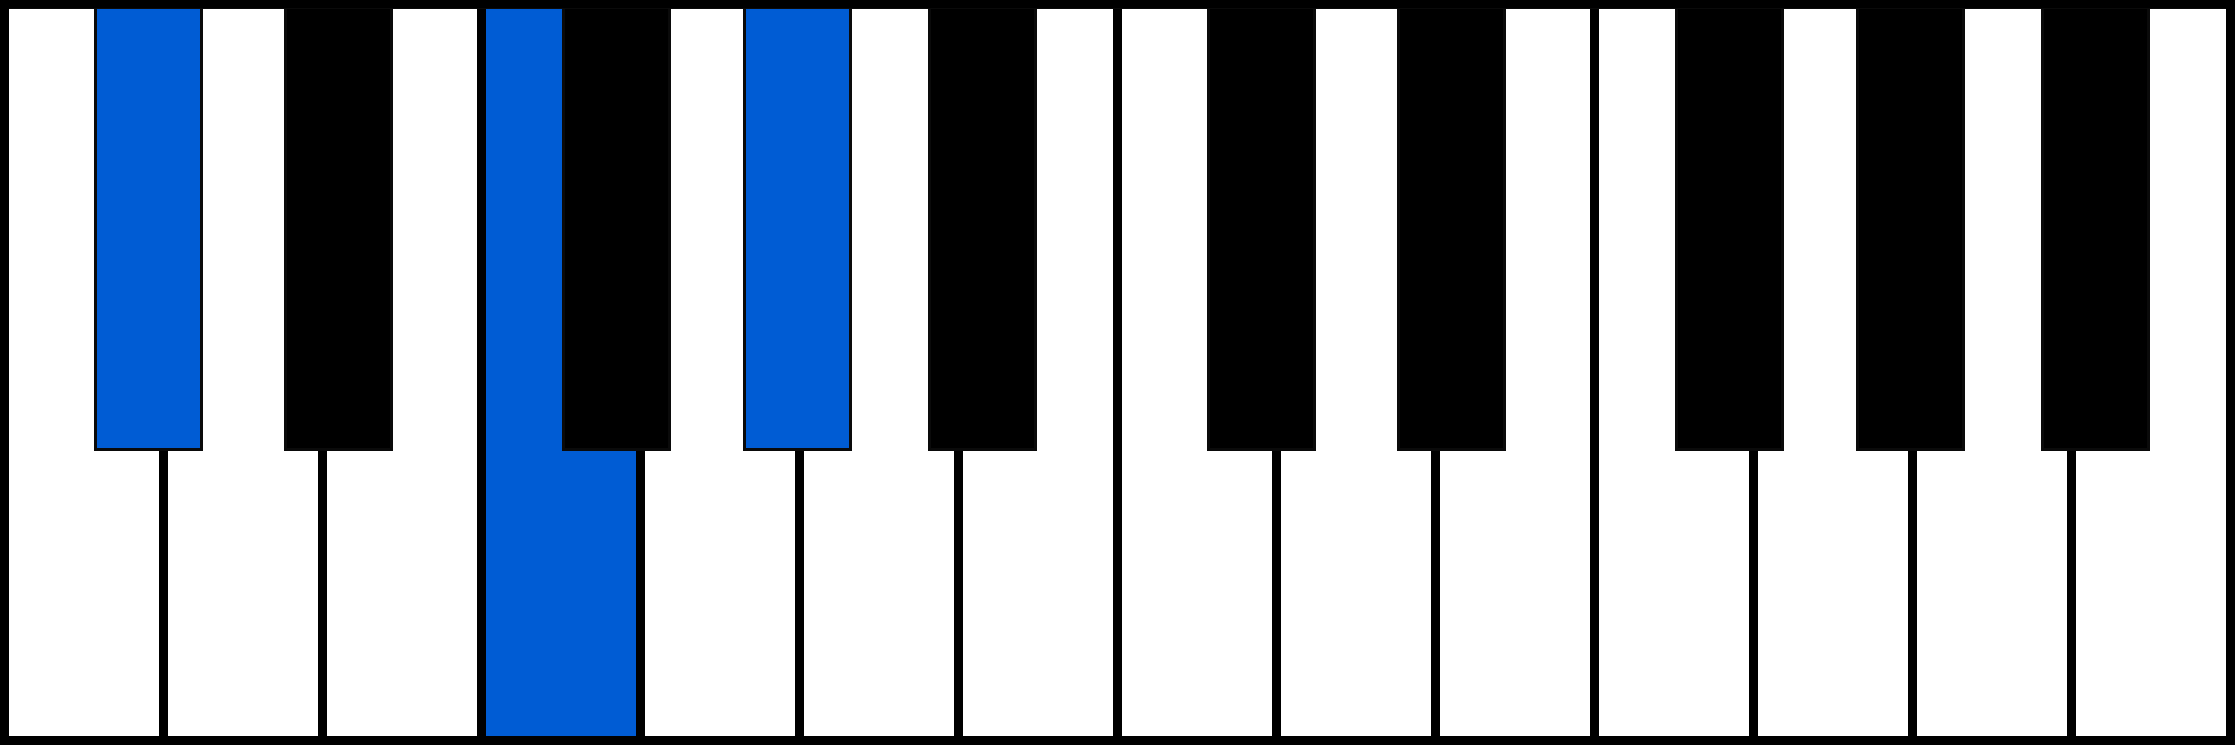 C# piano chord